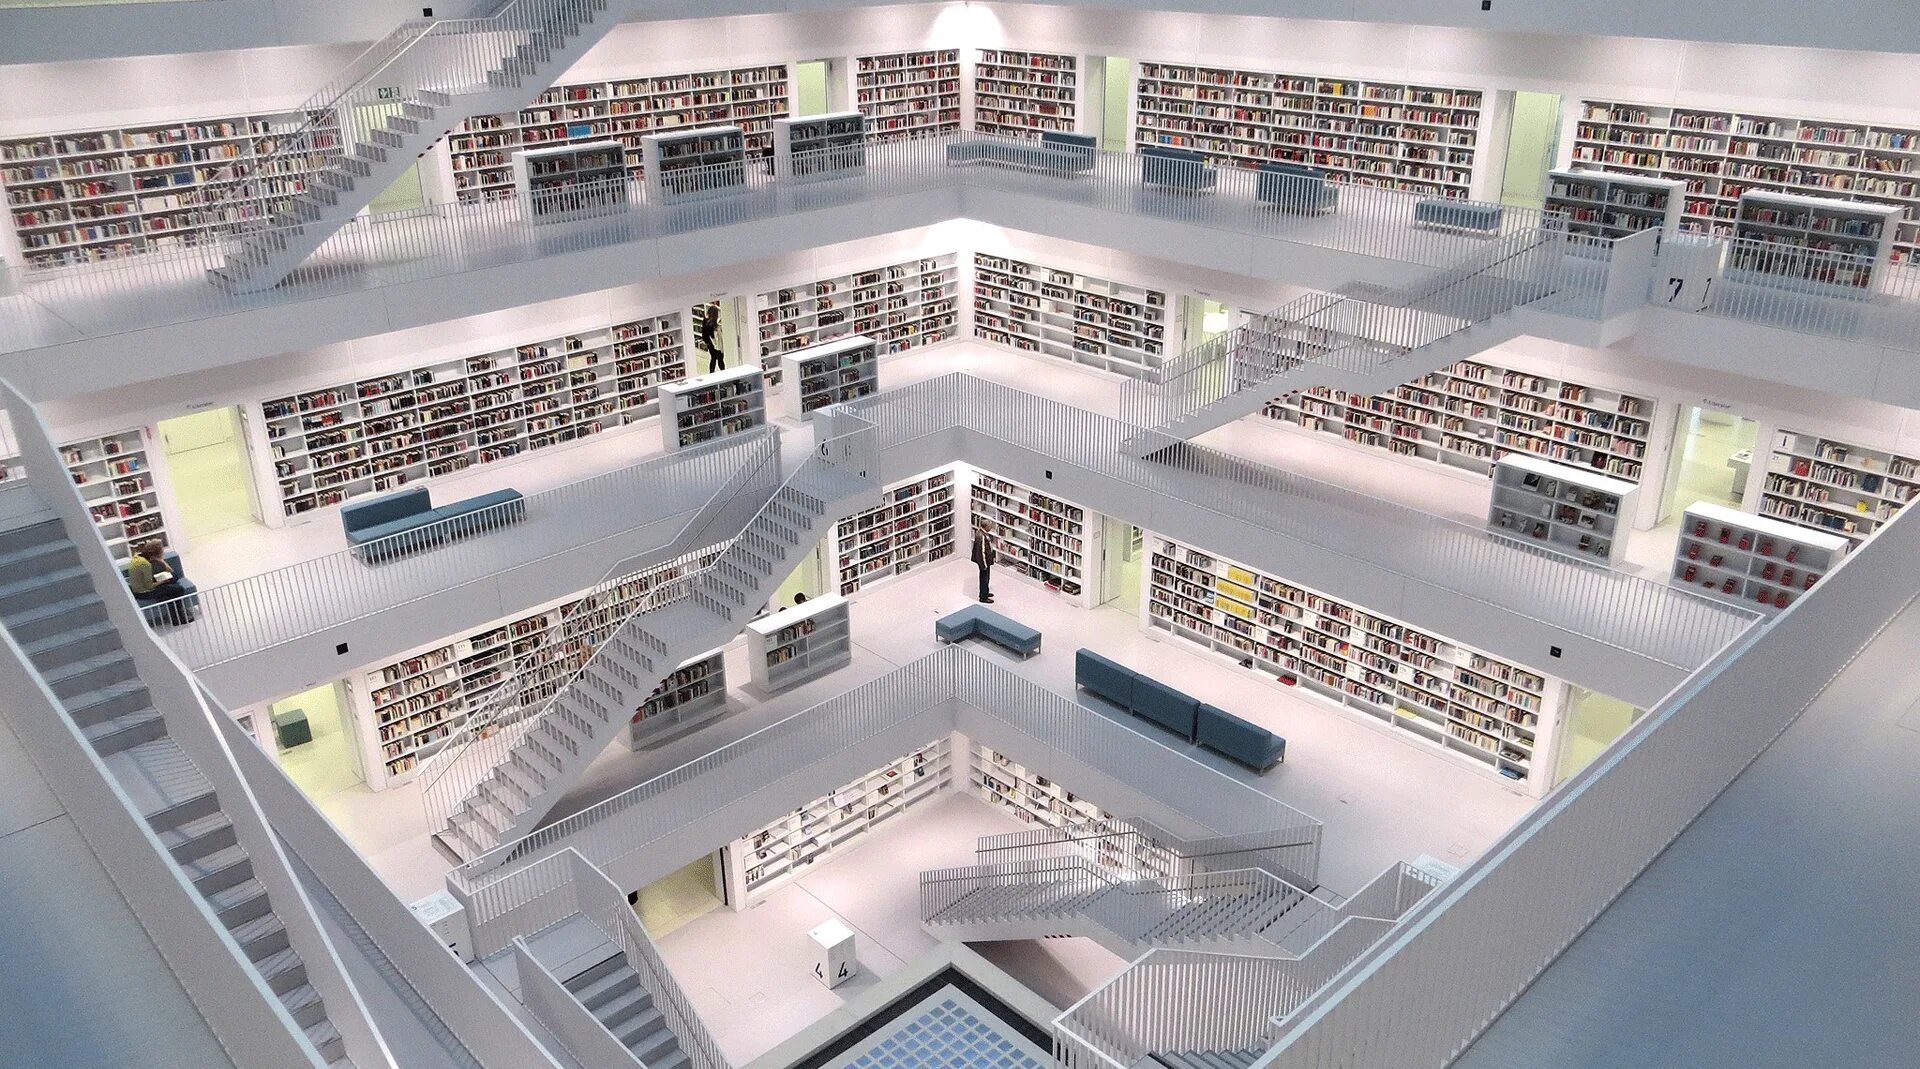 Library io. Библиотека будущего. Интерьер современной библиотеки. Библиотека будущего проект. Библиотека в будущем.